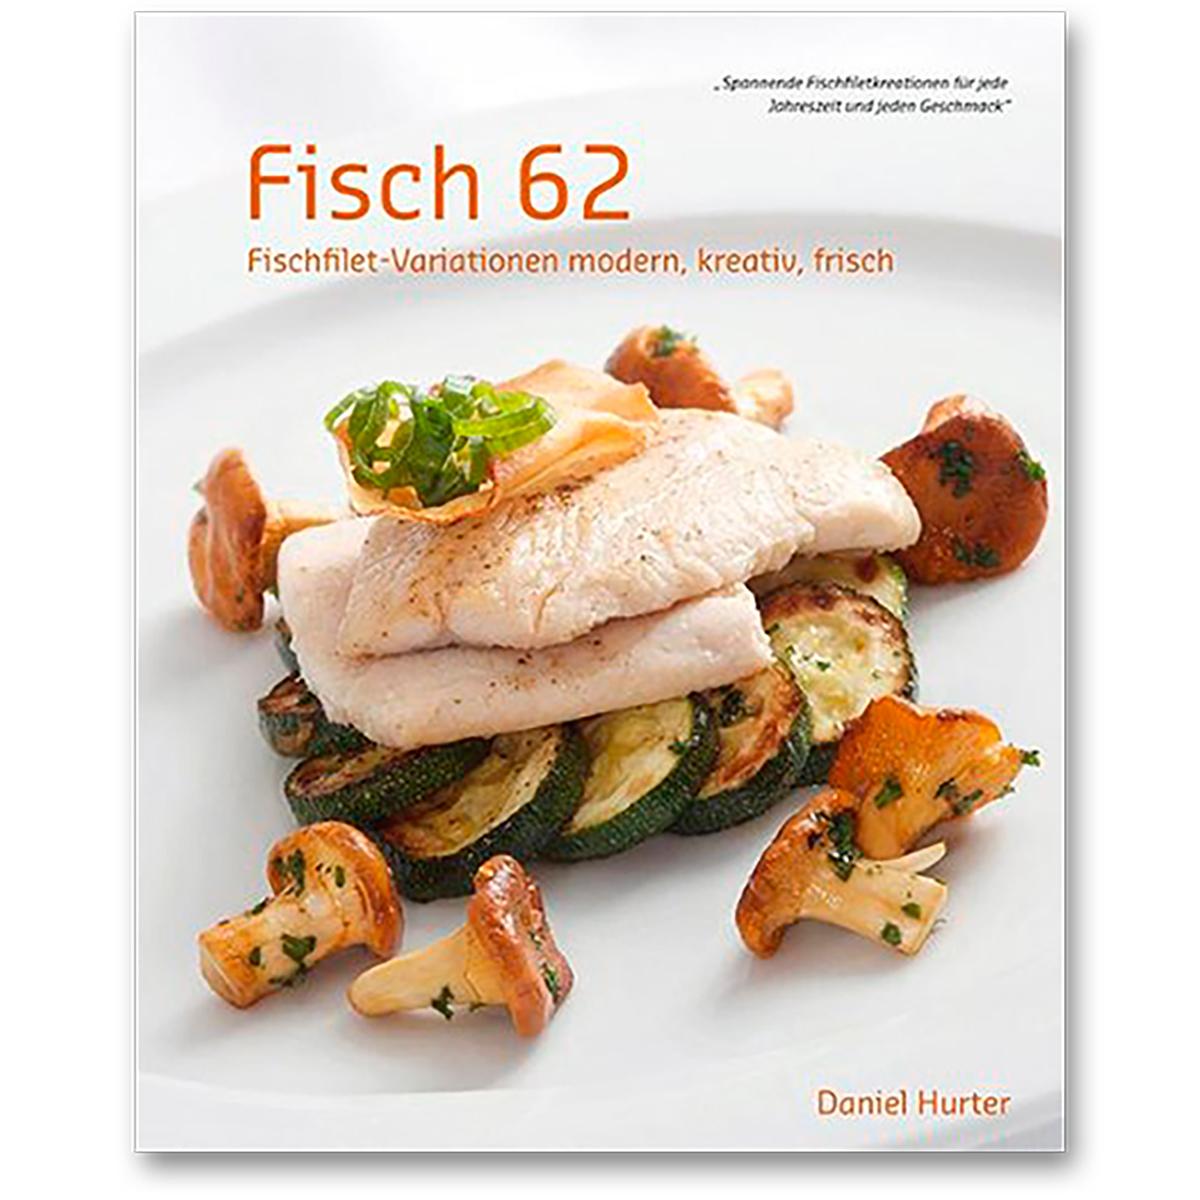 Fisch 62 - 62 Fischfiletvariationen modern, kreativ, frisch